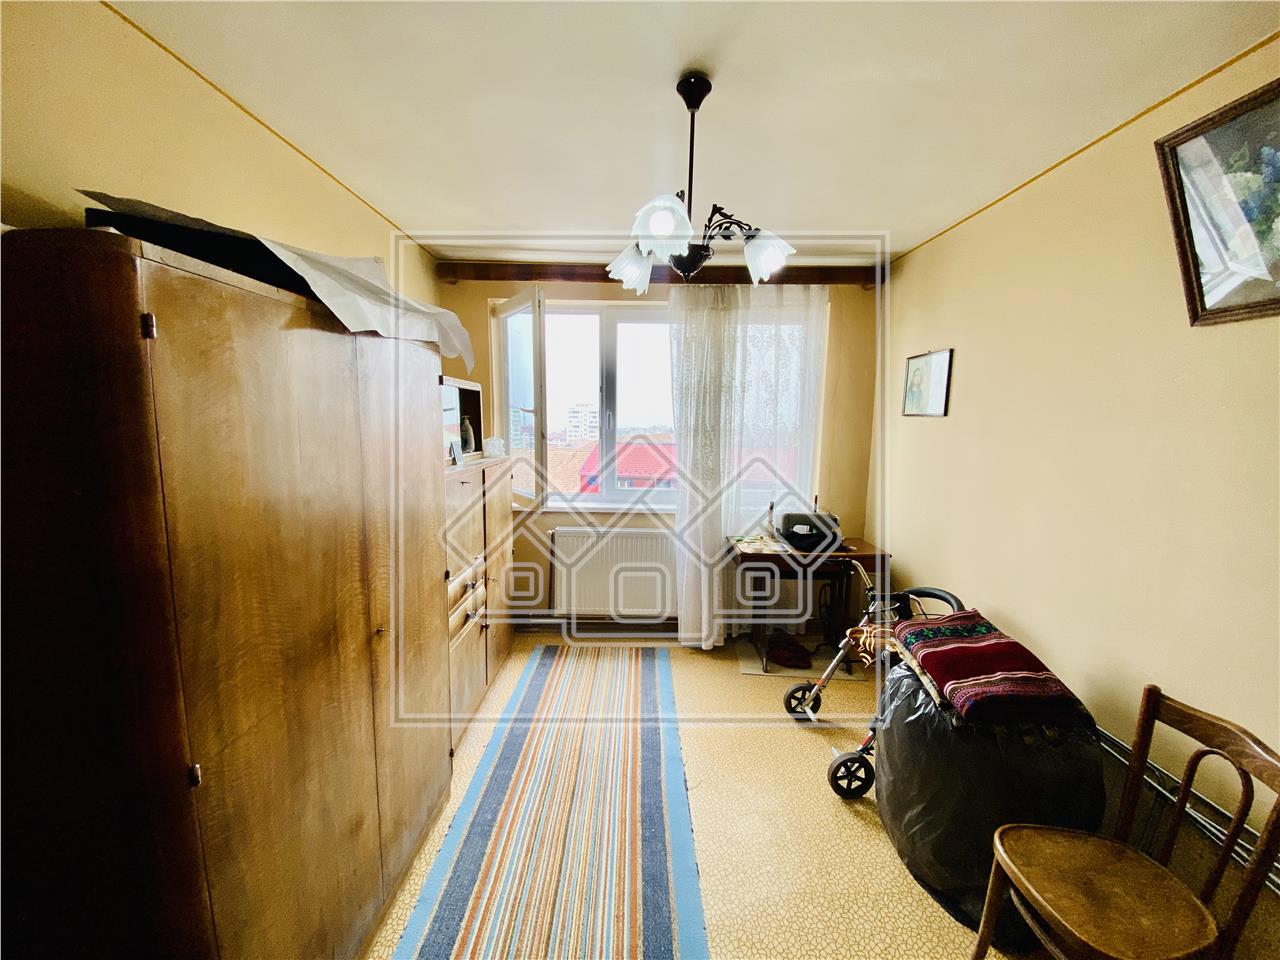 Apartament de vanzare in Sibiu - 3 camere si balcon - zona M.Viteazu